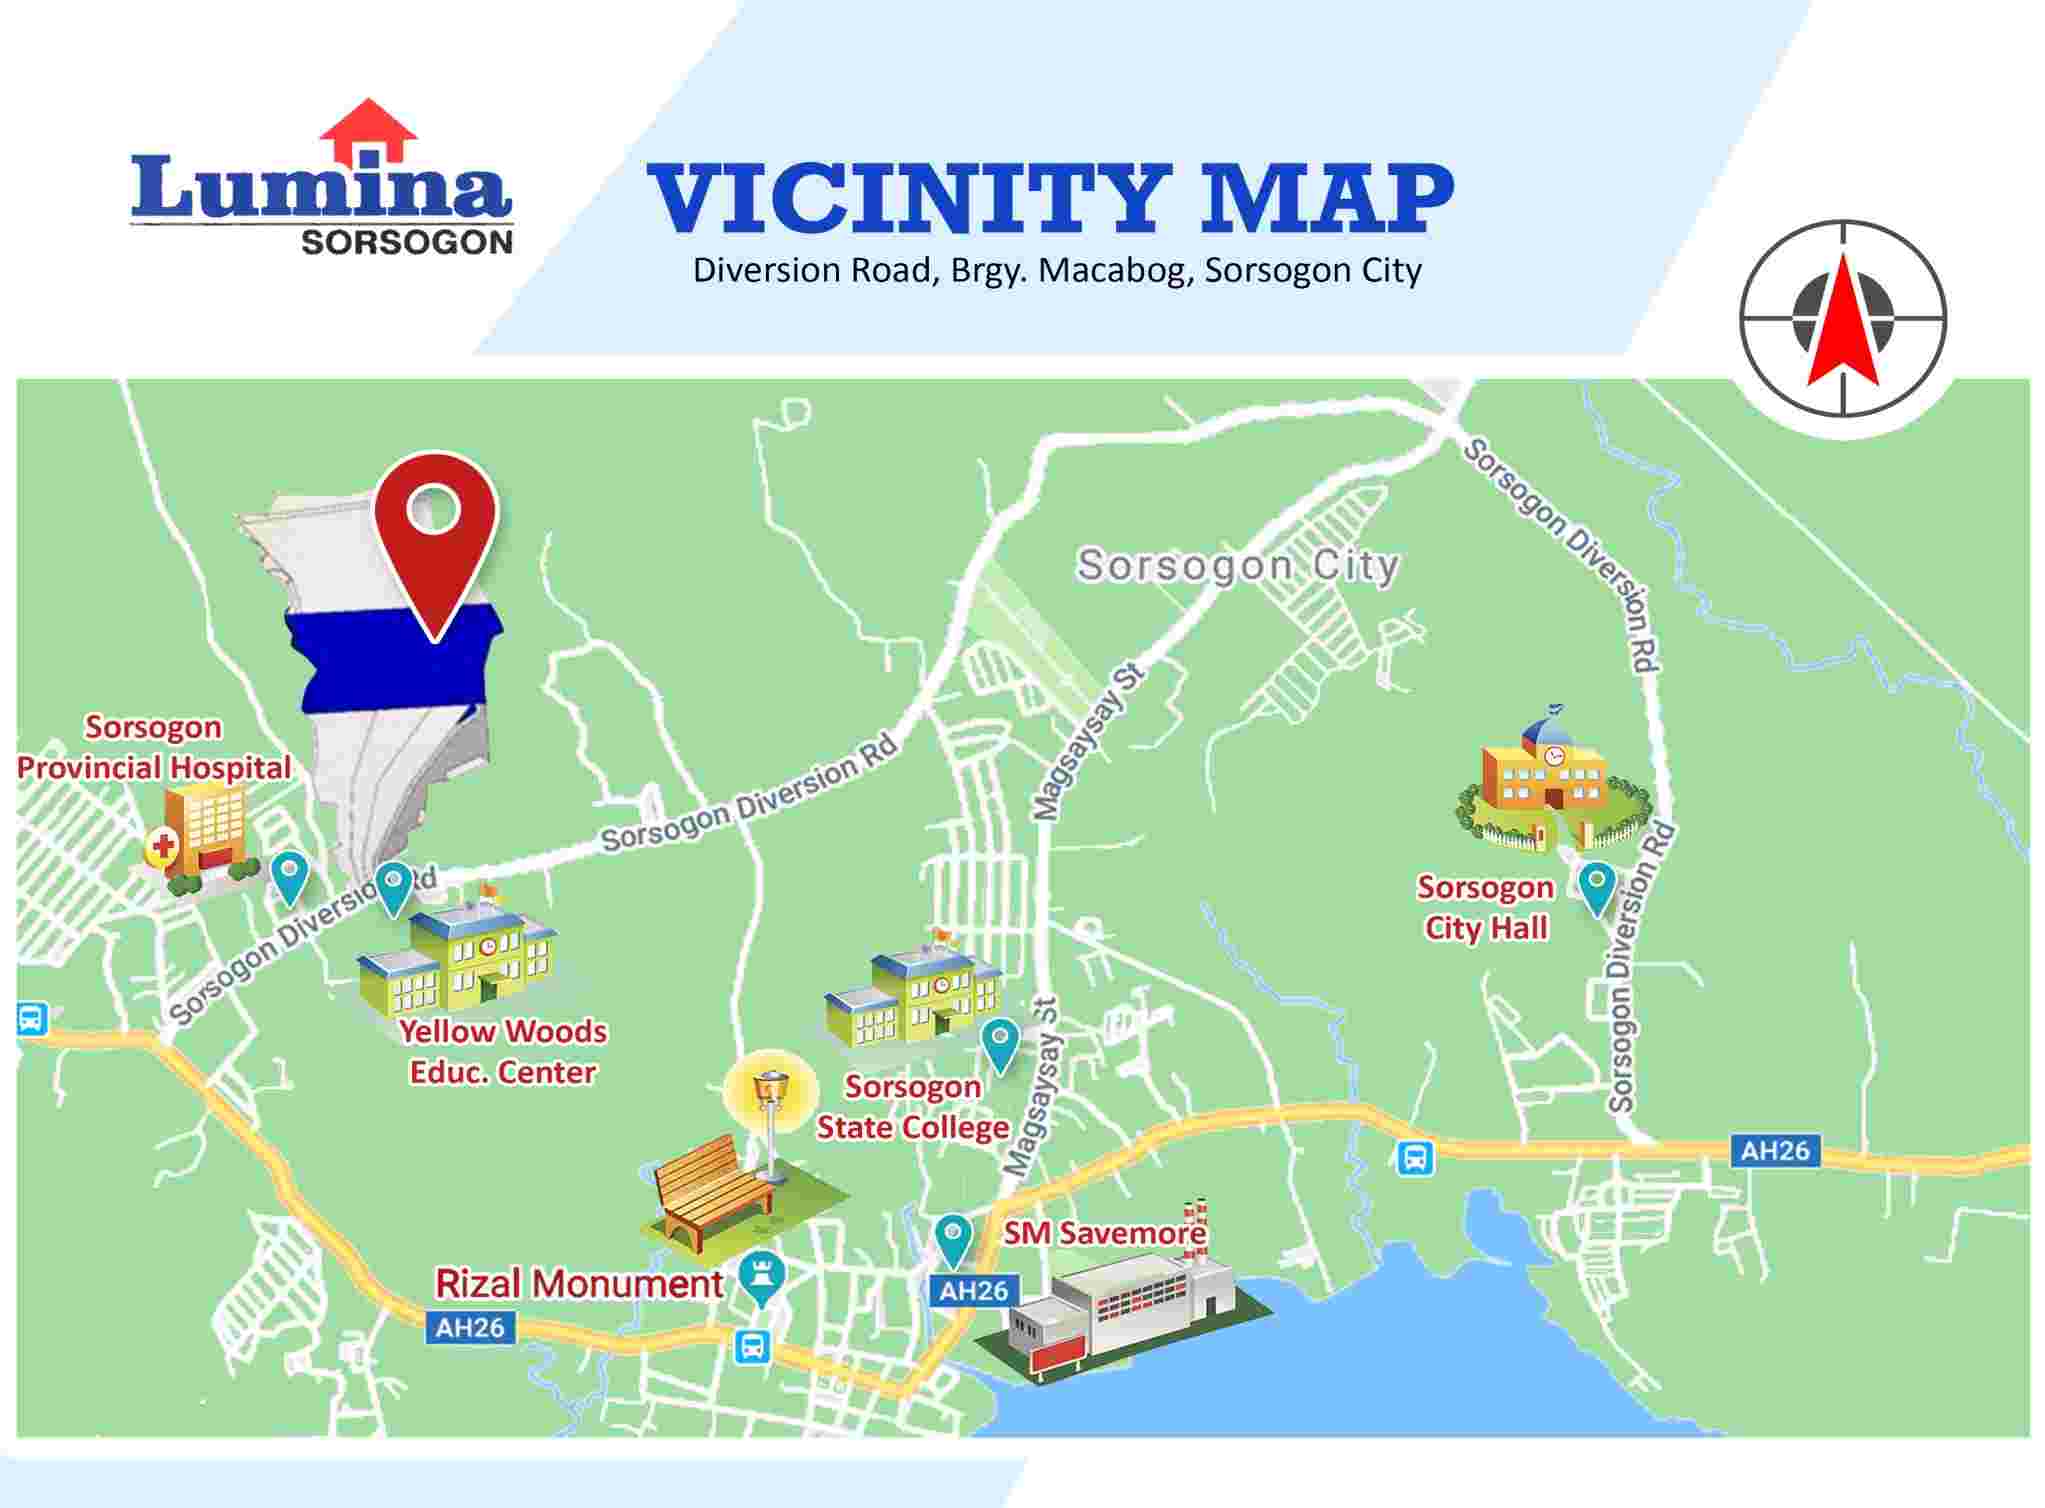 Vicinity-Map-1652172523.jpeg